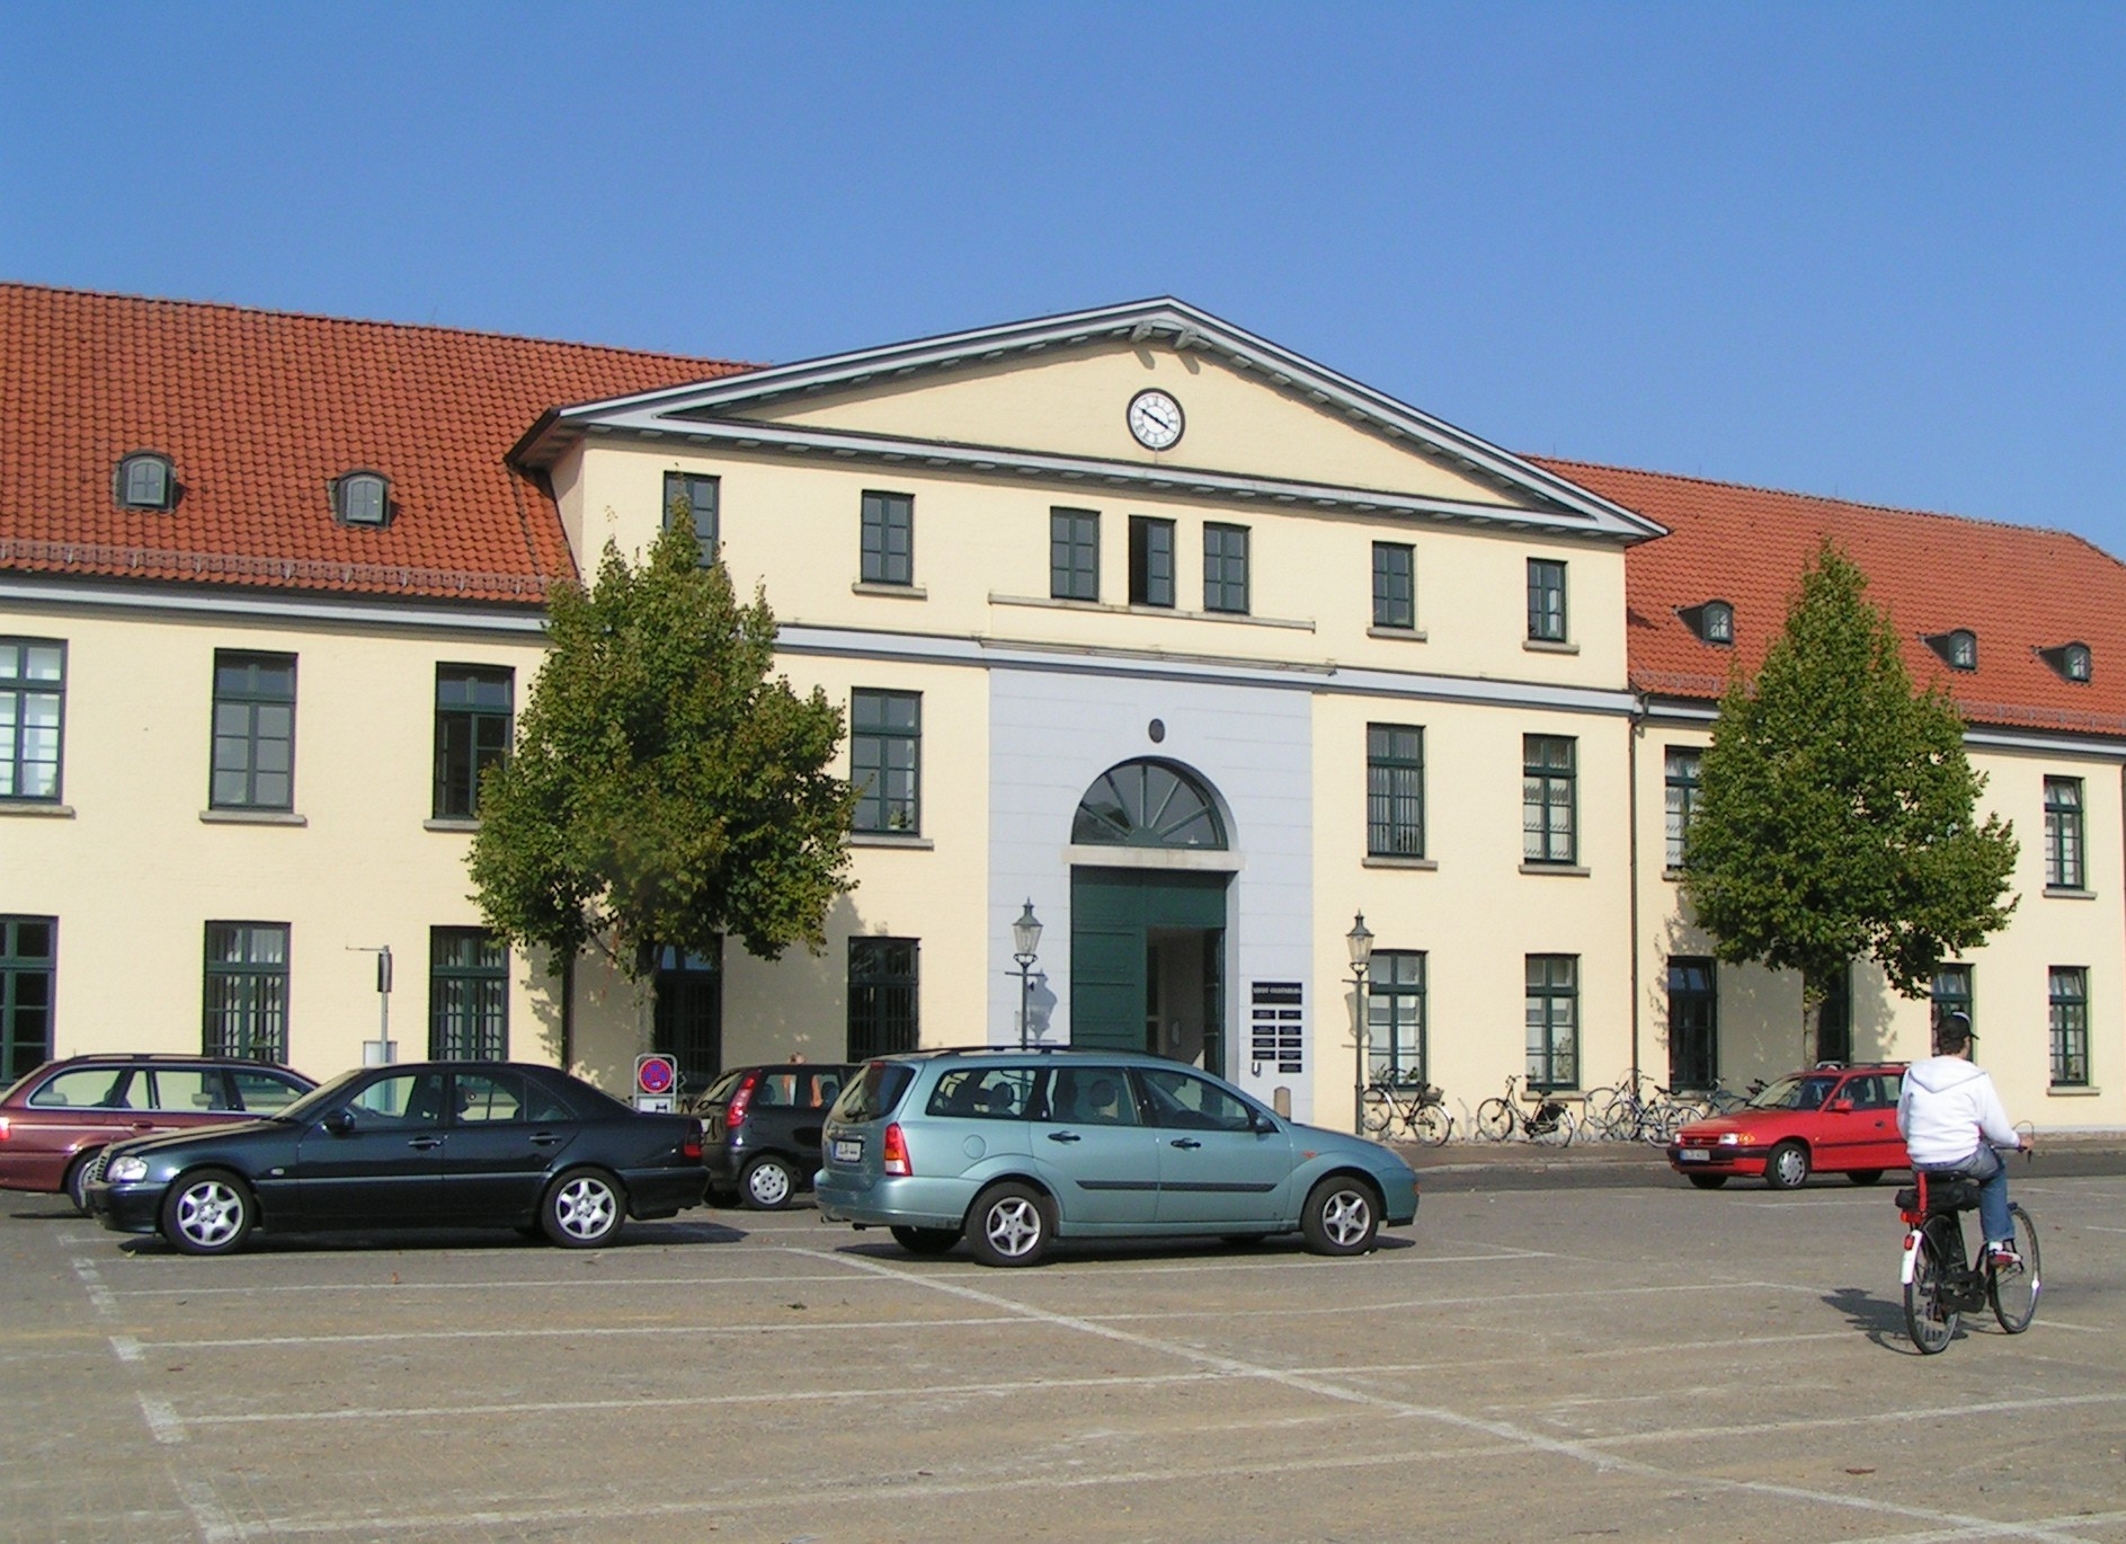 Neues Rathaus Oldenburg am Pferdemarkt.
